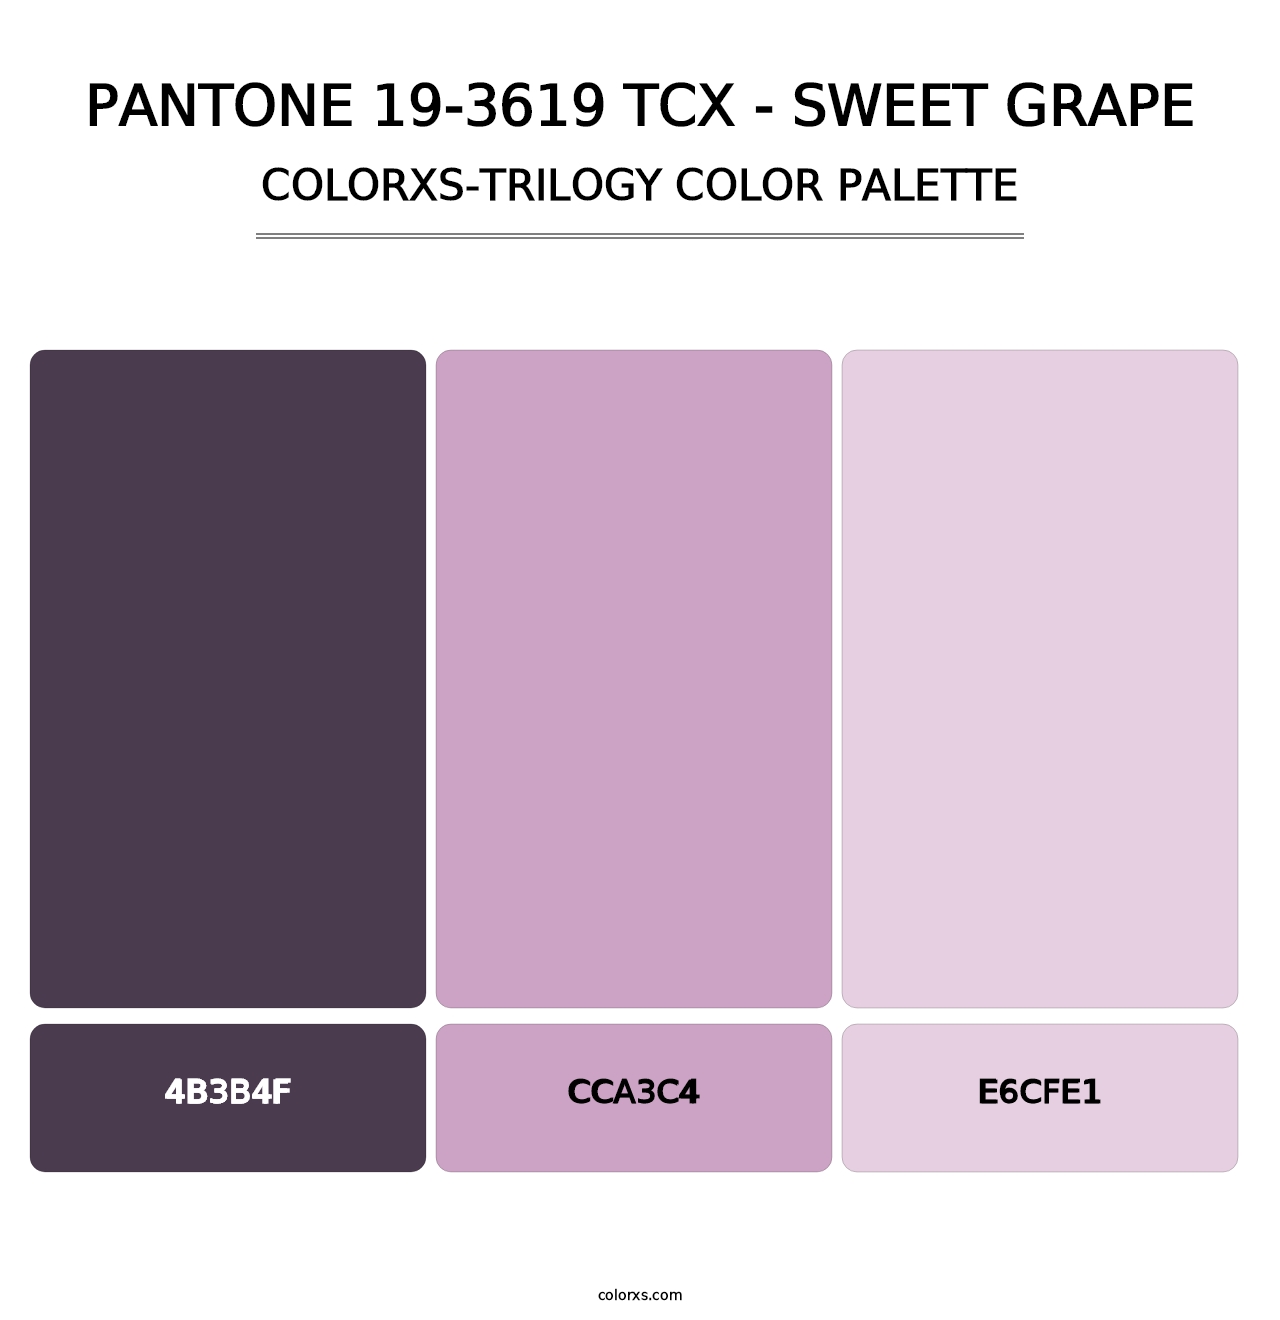 PANTONE 19-3619 TCX - Sweet Grape - Colorxs Trilogy Palette